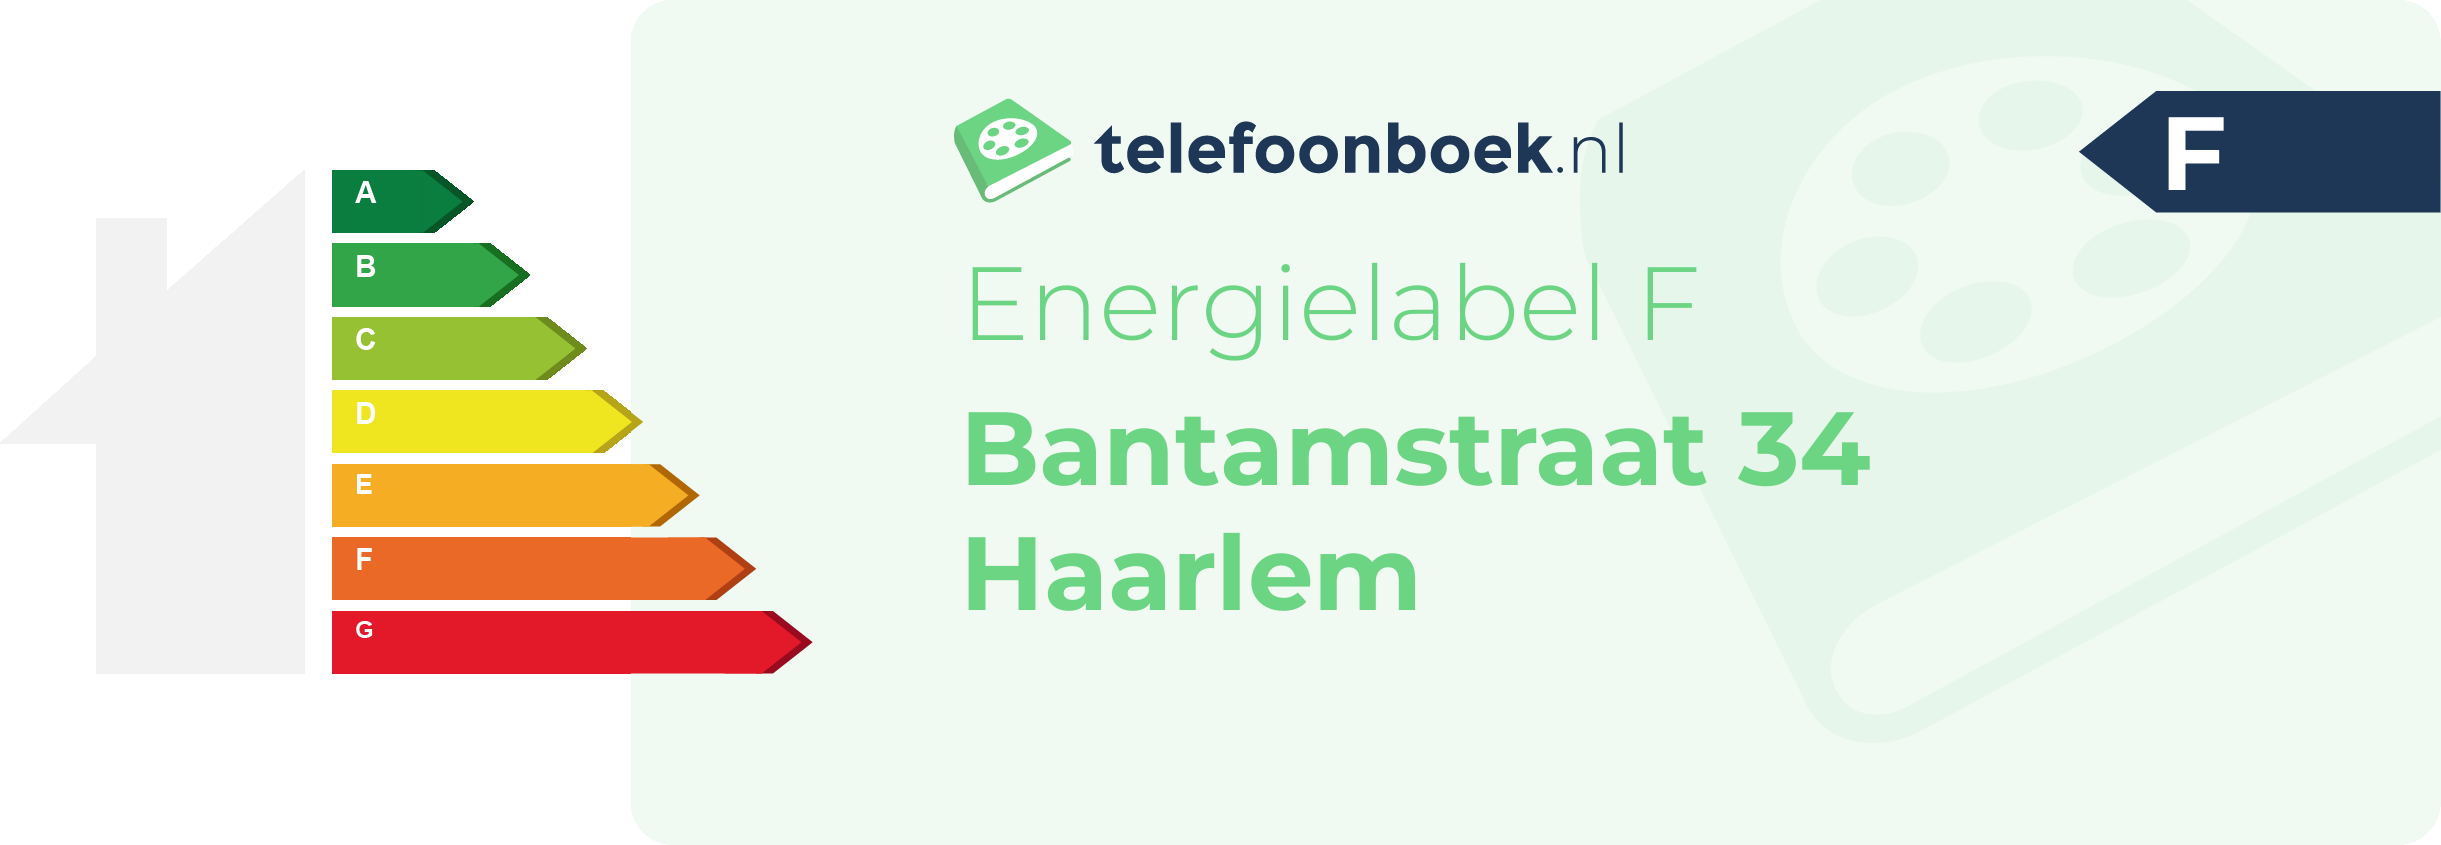 Energielabel Bantamstraat 34 Haarlem